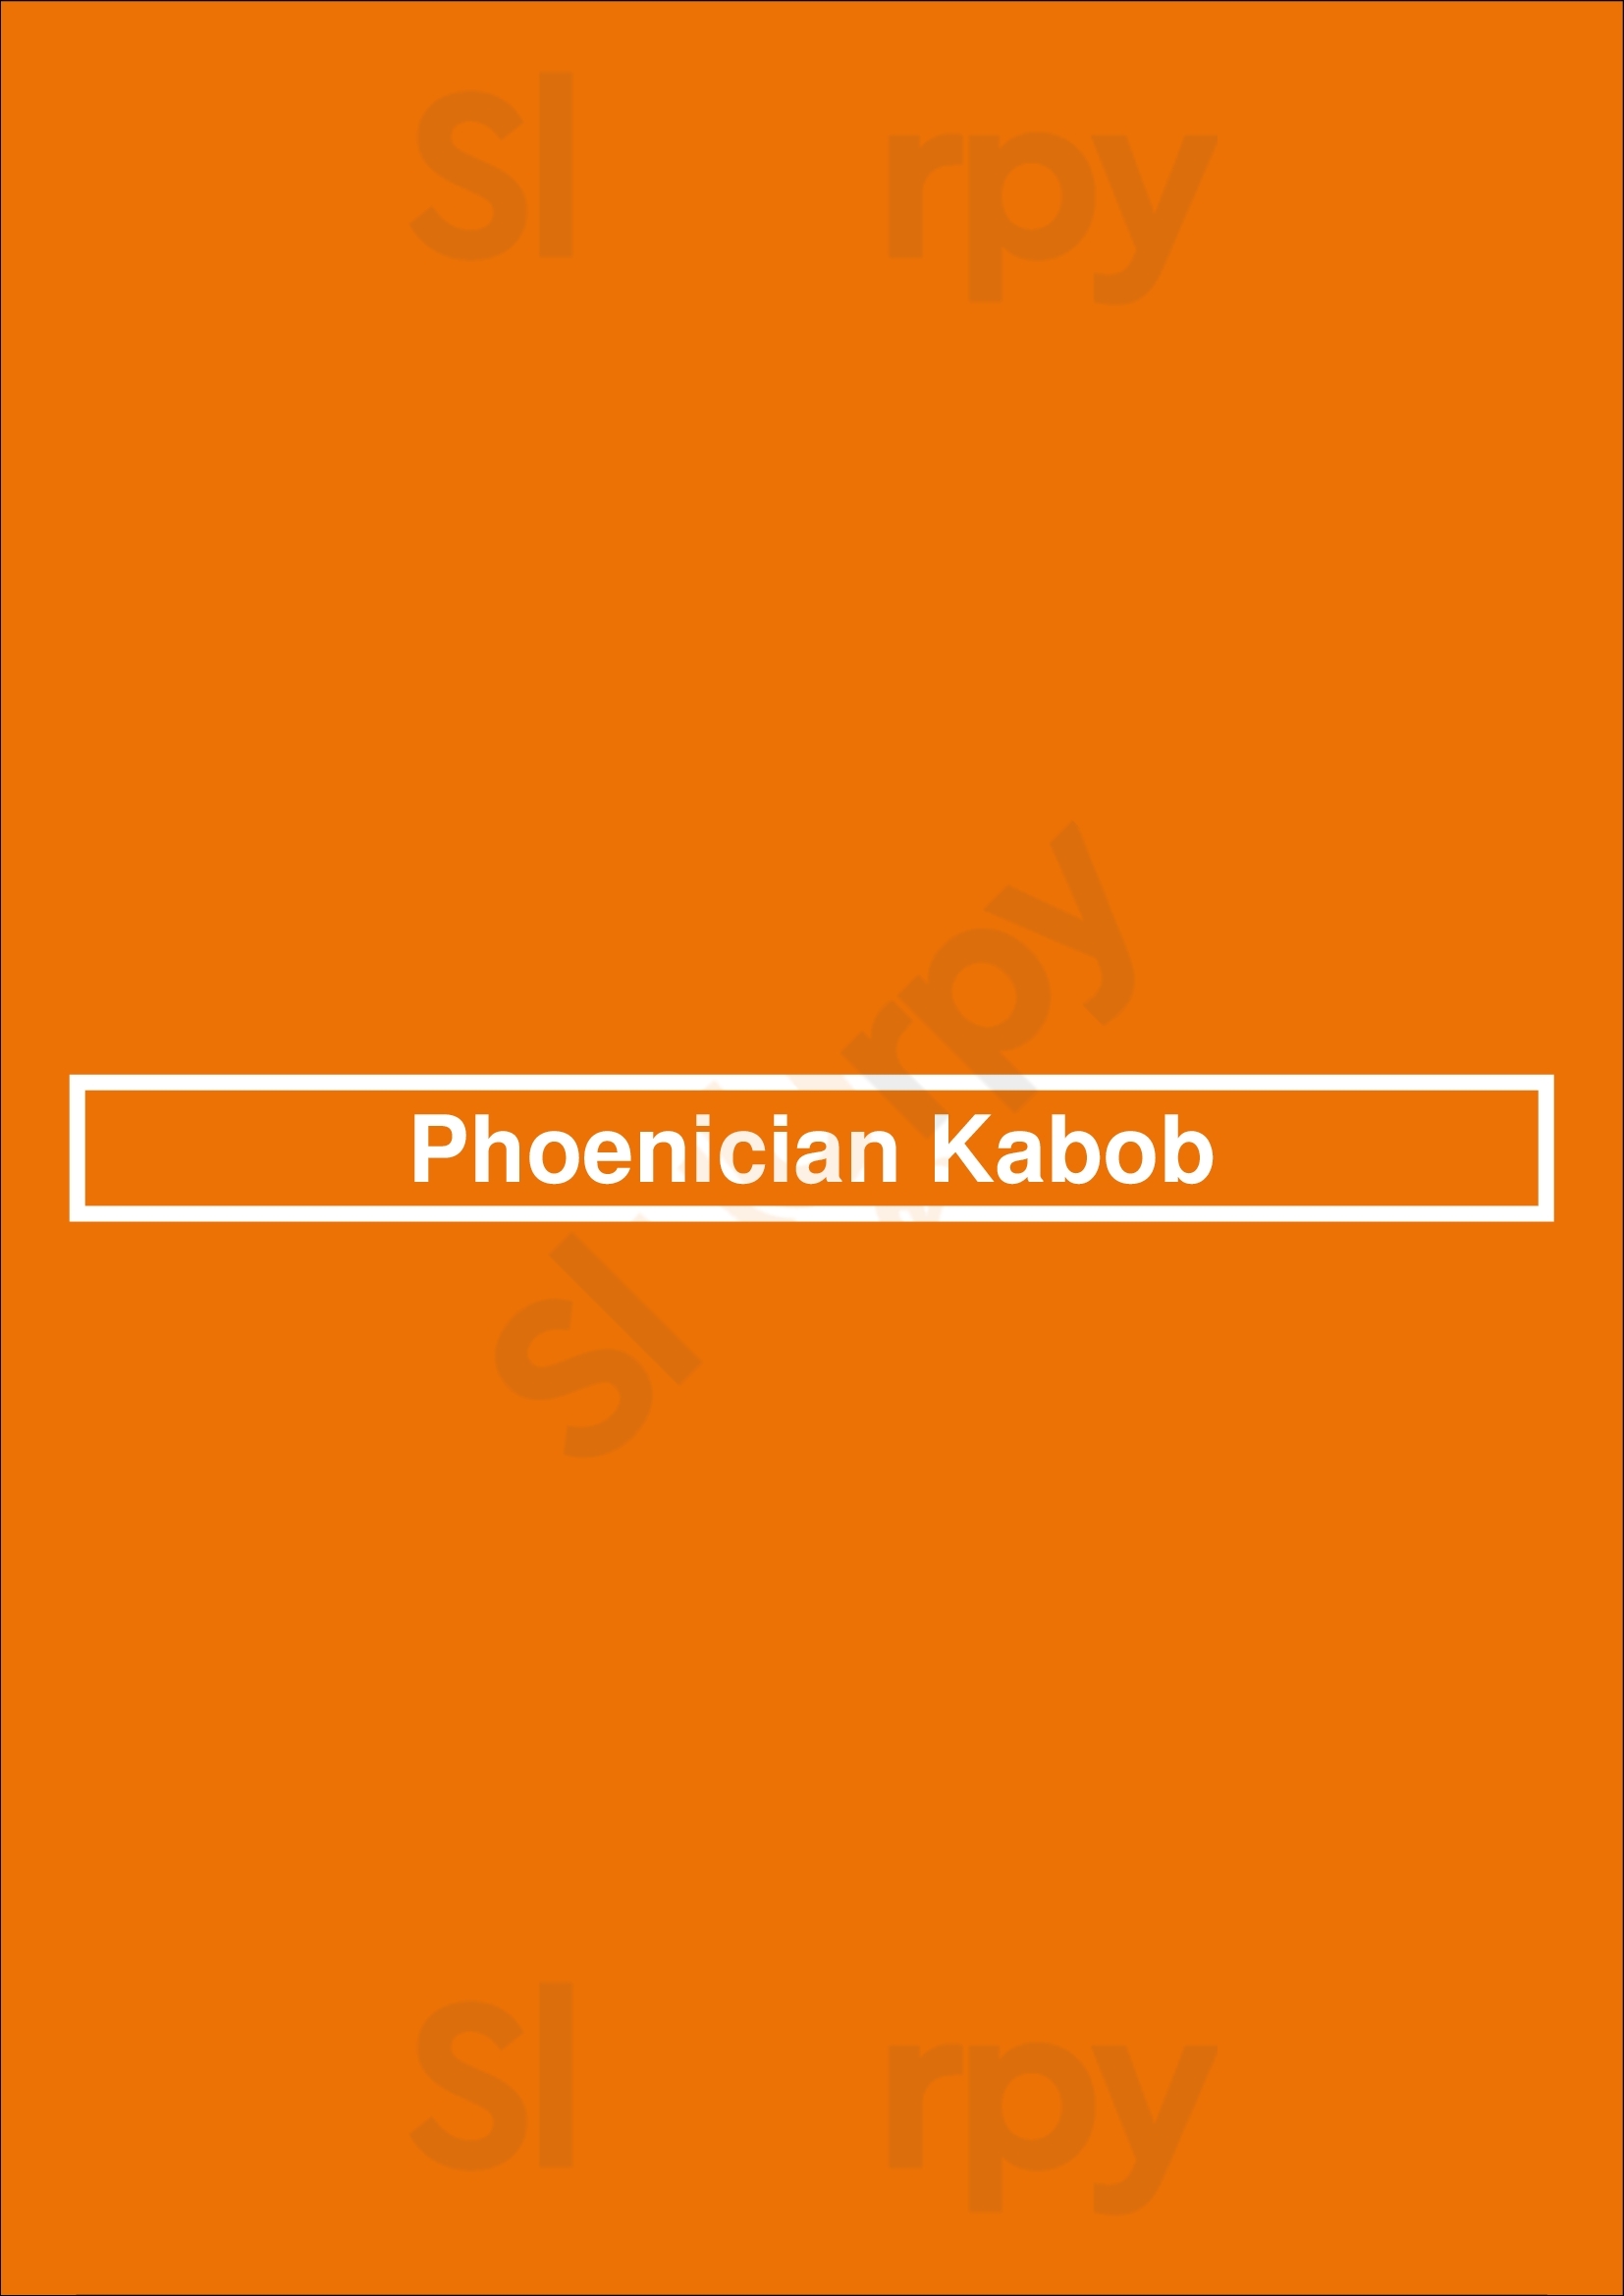 Phoenician Kabob Denver Menu - 1